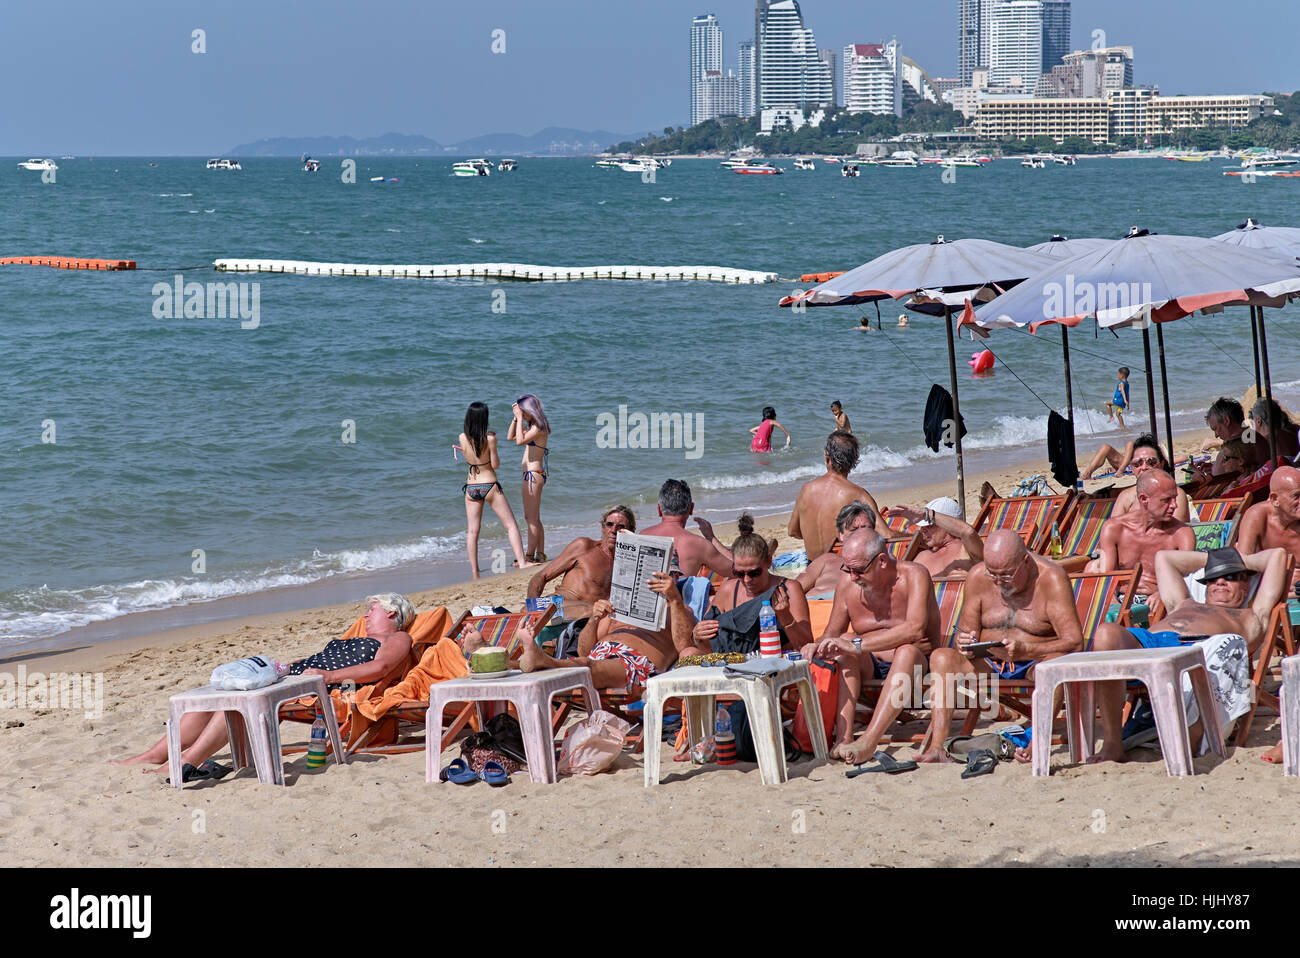 Touristes bains de soleil sur la plage de Pattaya, Thaïlande tourisme Asie du Sud-est Banque D'Images